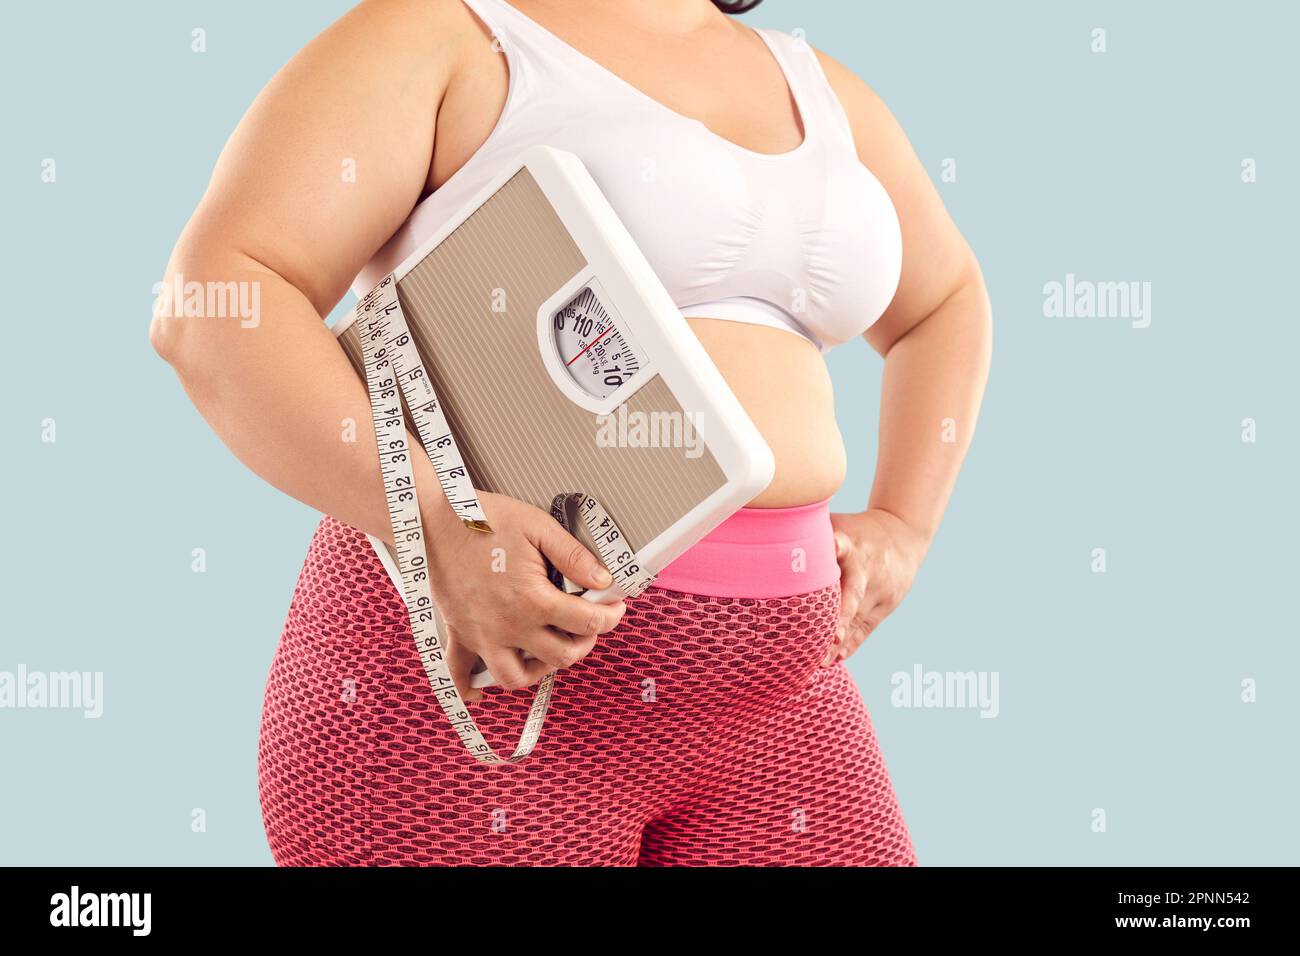 Eine dicke, übergewichtige junge Frau in einem Sport-BH mit Waage und  Maßband Stockfotografie - Alamy